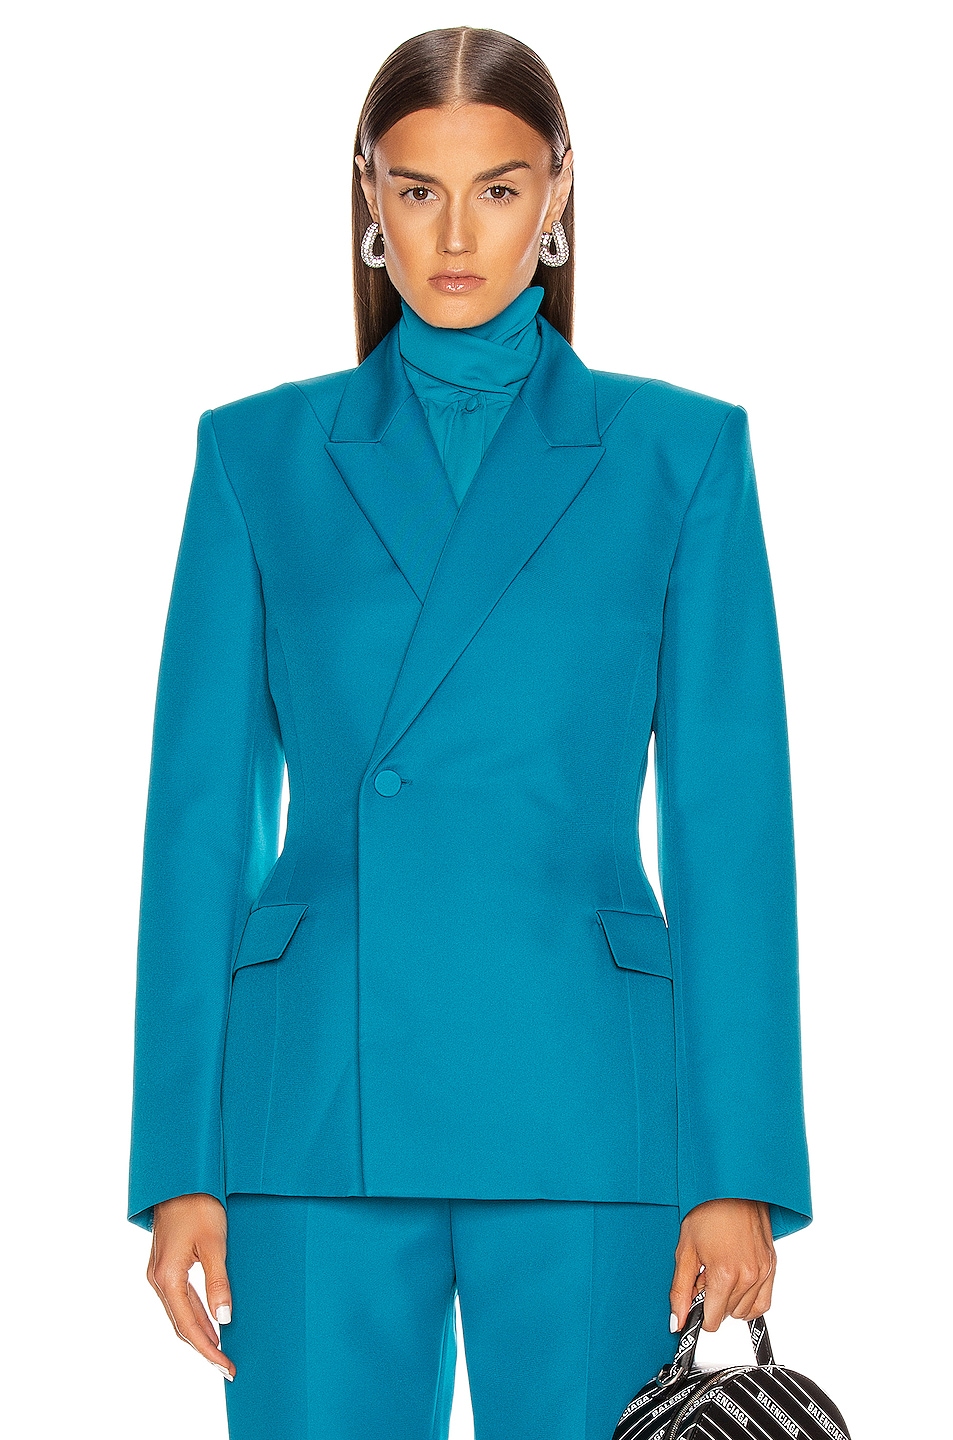 Balenciaga Waisted Jacket in Petrol Blue | FWRD